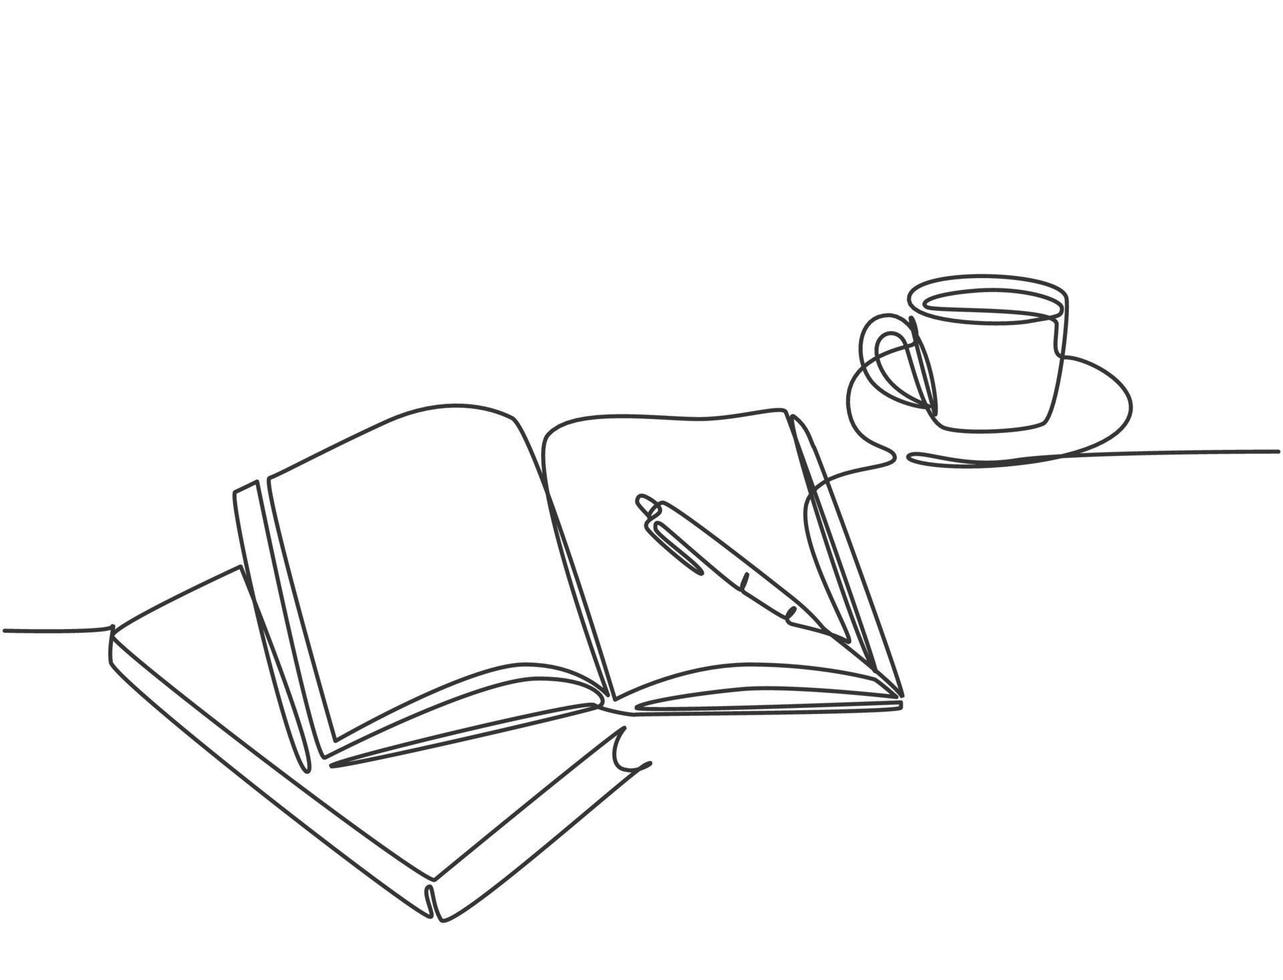 enkele doorlopende lijntekening van handgebaar schrijven op een open boek naast een kopje koffie op het bureau. schrijven concept bedrijfsconcept. moderne één lijn tekenen ontwerp vector grafische afbeelding